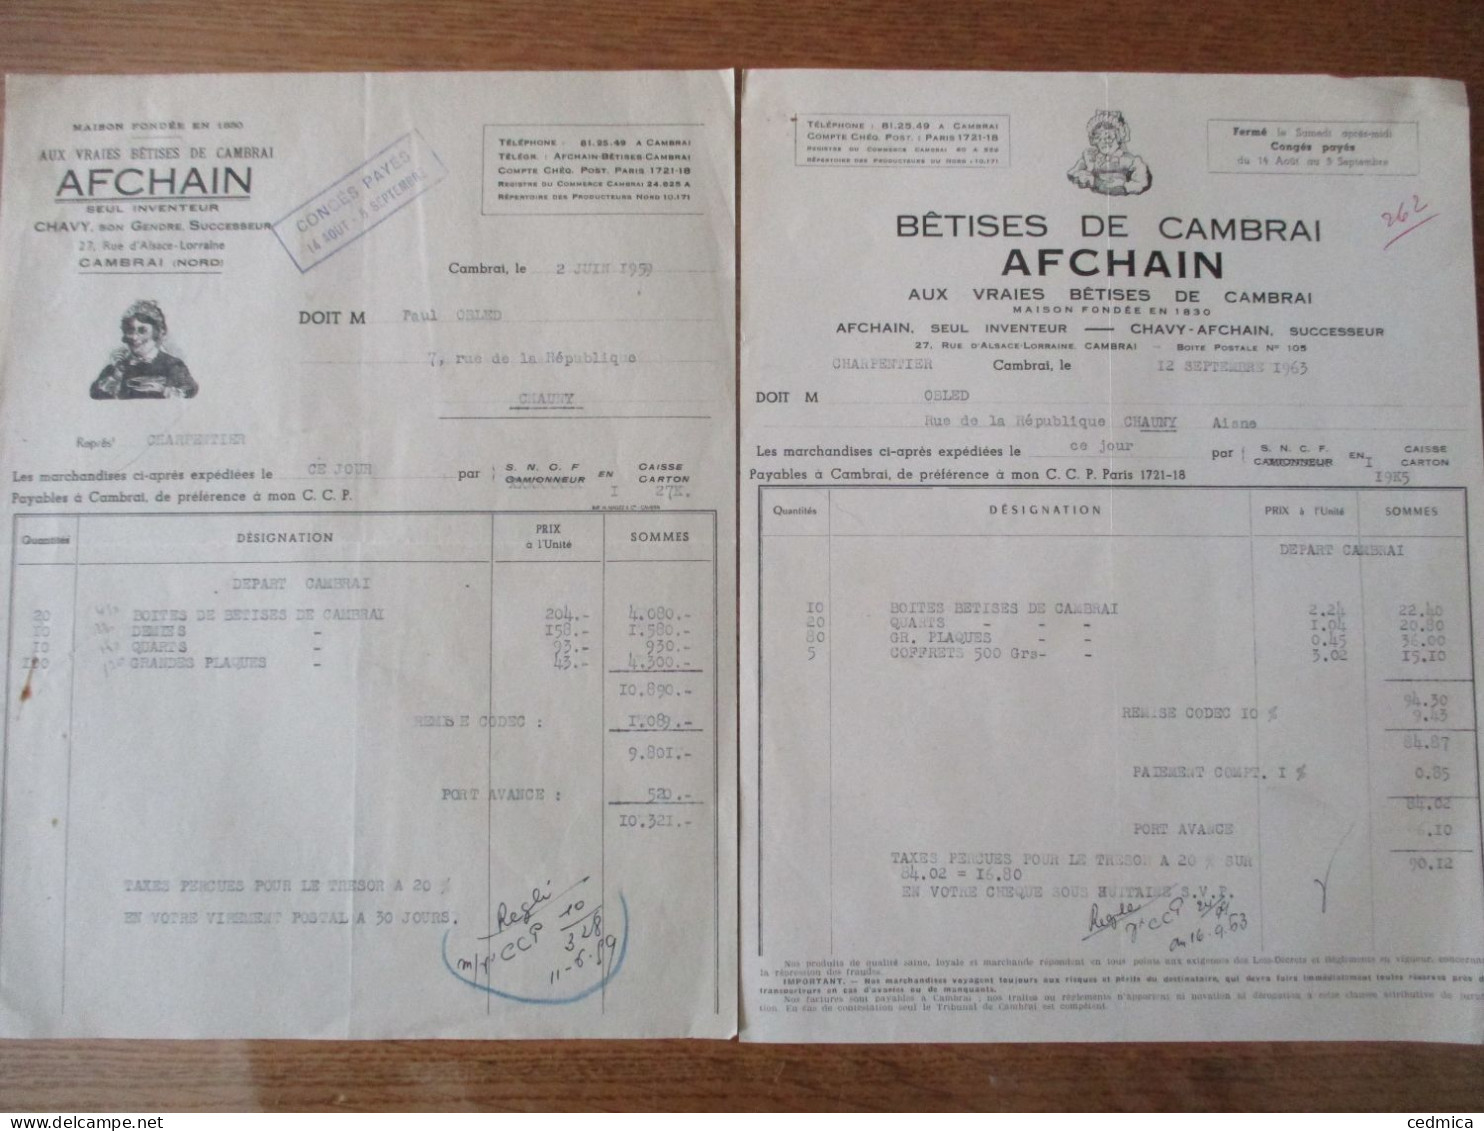 BÊTISES DE CAMBRAI AFCHAIN AUX VRAIES BÊTISES DE CAMBRAI FACTURES DES 2 JUIN 1959 ET 12 SEPTEMBRE 1963 AFCHAIN INVENTEUR - 1950 - ...